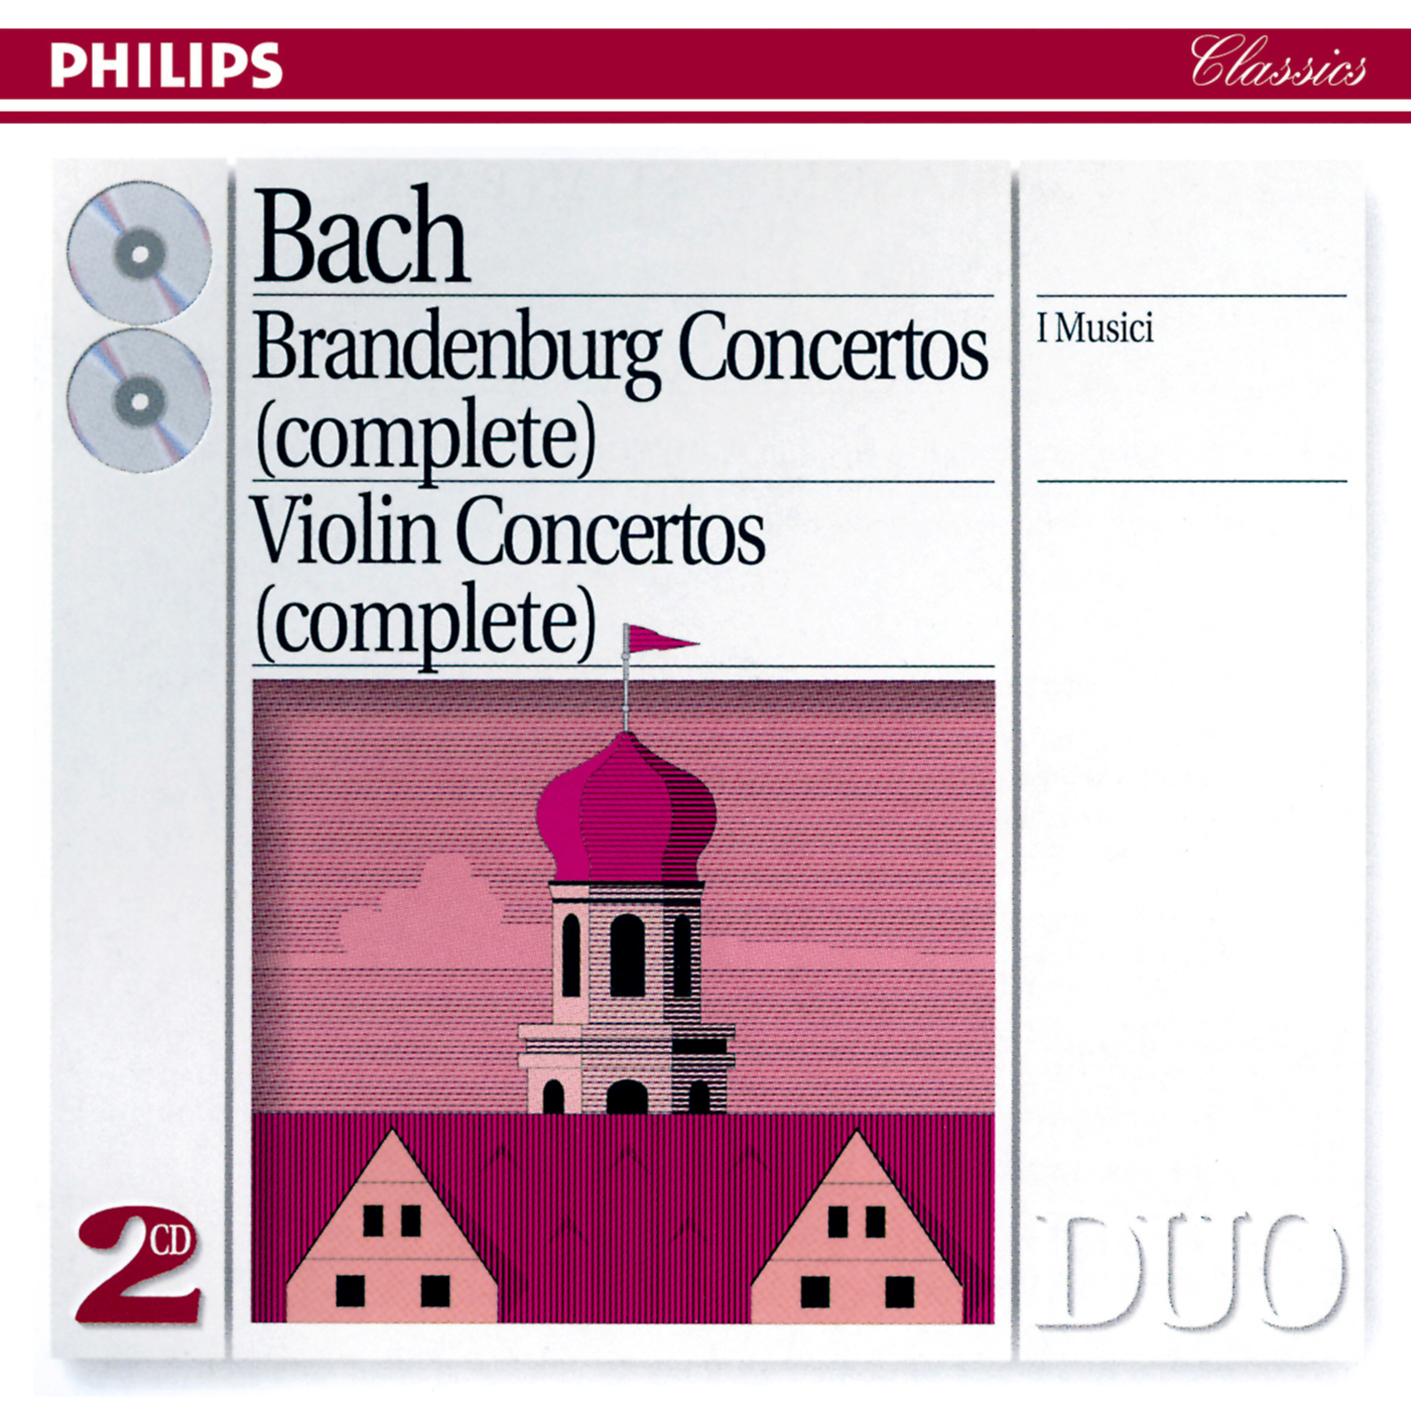 I Musici - Brandenburg Concerto No.4 in G, BWV 1049:3. Presto